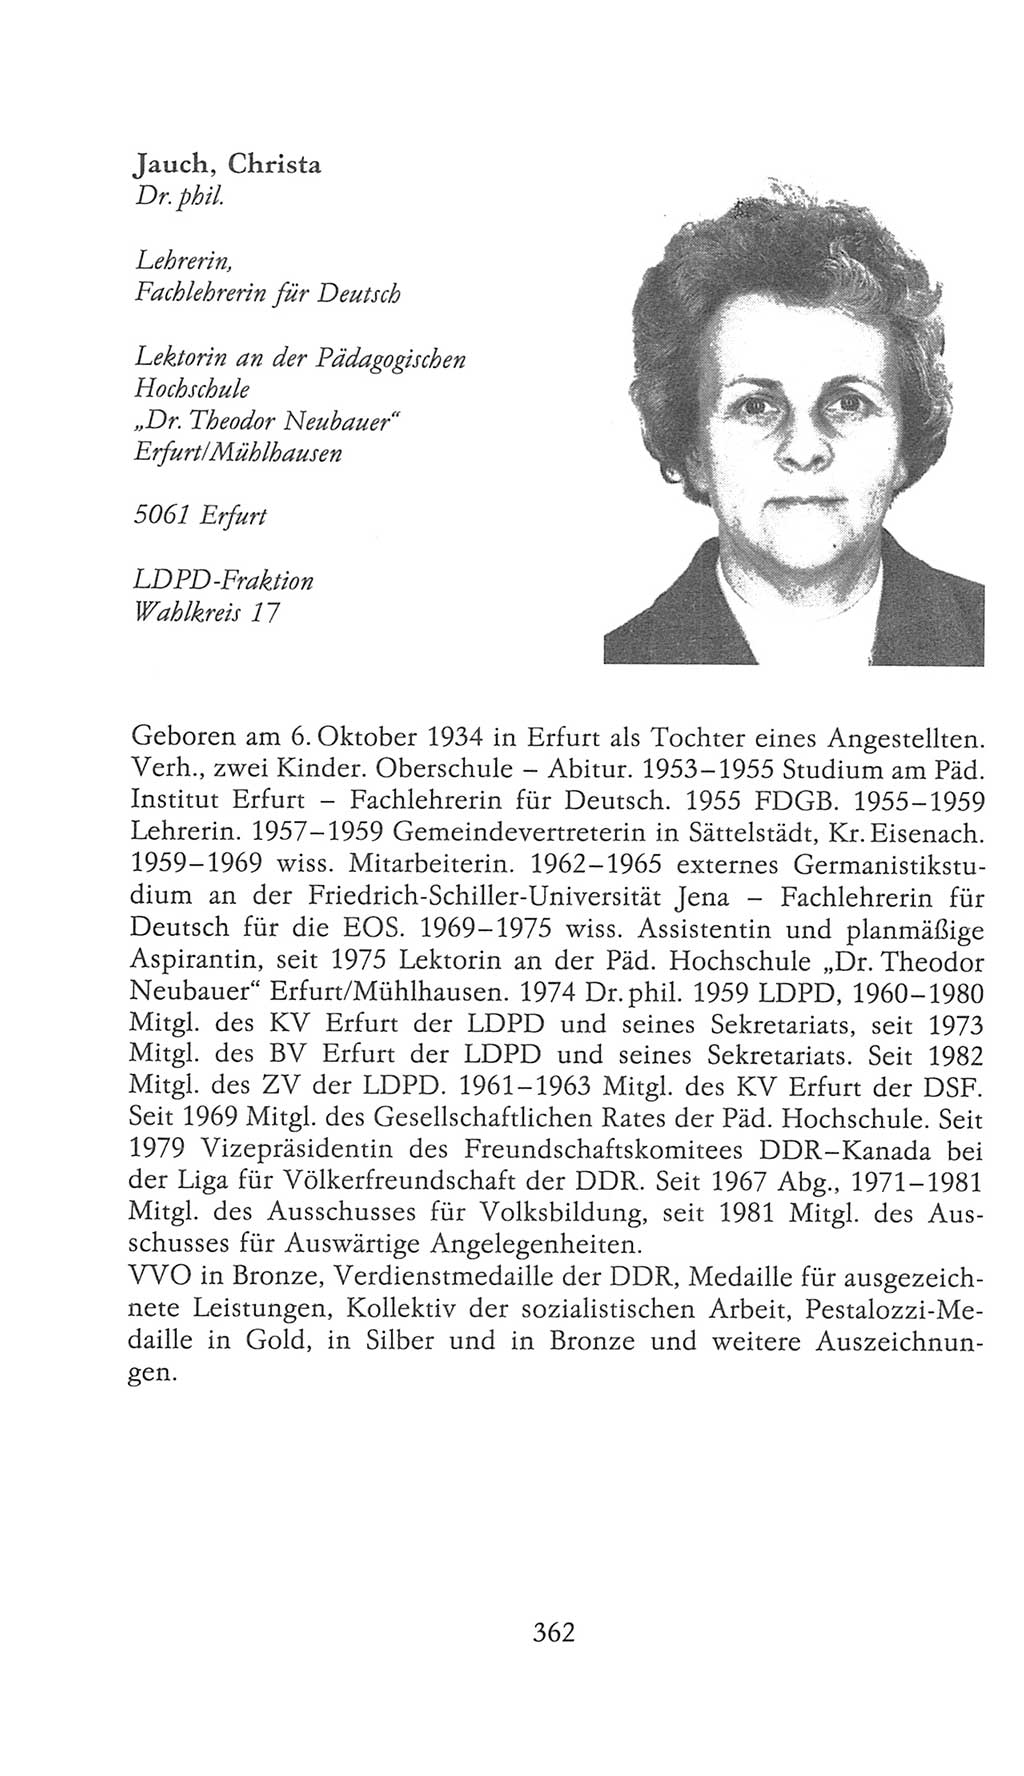 Volkskammer (VK) der Deutschen Demokratischen Republik (DDR), 9. Wahlperiode 1986-1990, Seite 362 (VK. DDR 9. WP. 1986-1990, S. 362)